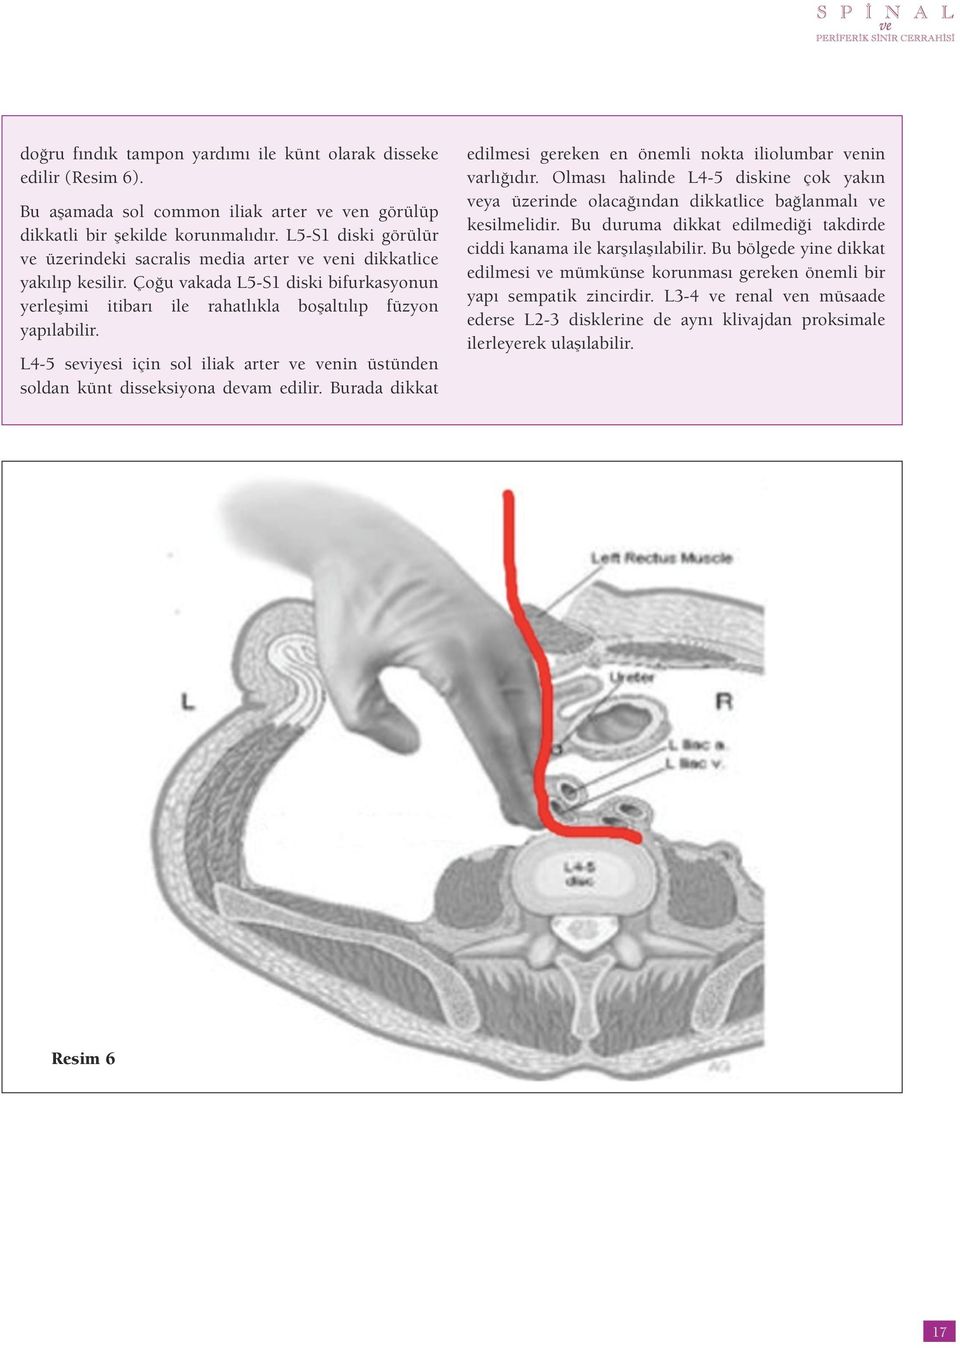 L4-5 seviyesi için sol iliak arter ve venin üstünden soldan künt disseksiyona devam edilir. Burada dikkat edilmesi gereken en önemli nokta iliolumbar venin varlığıdır.